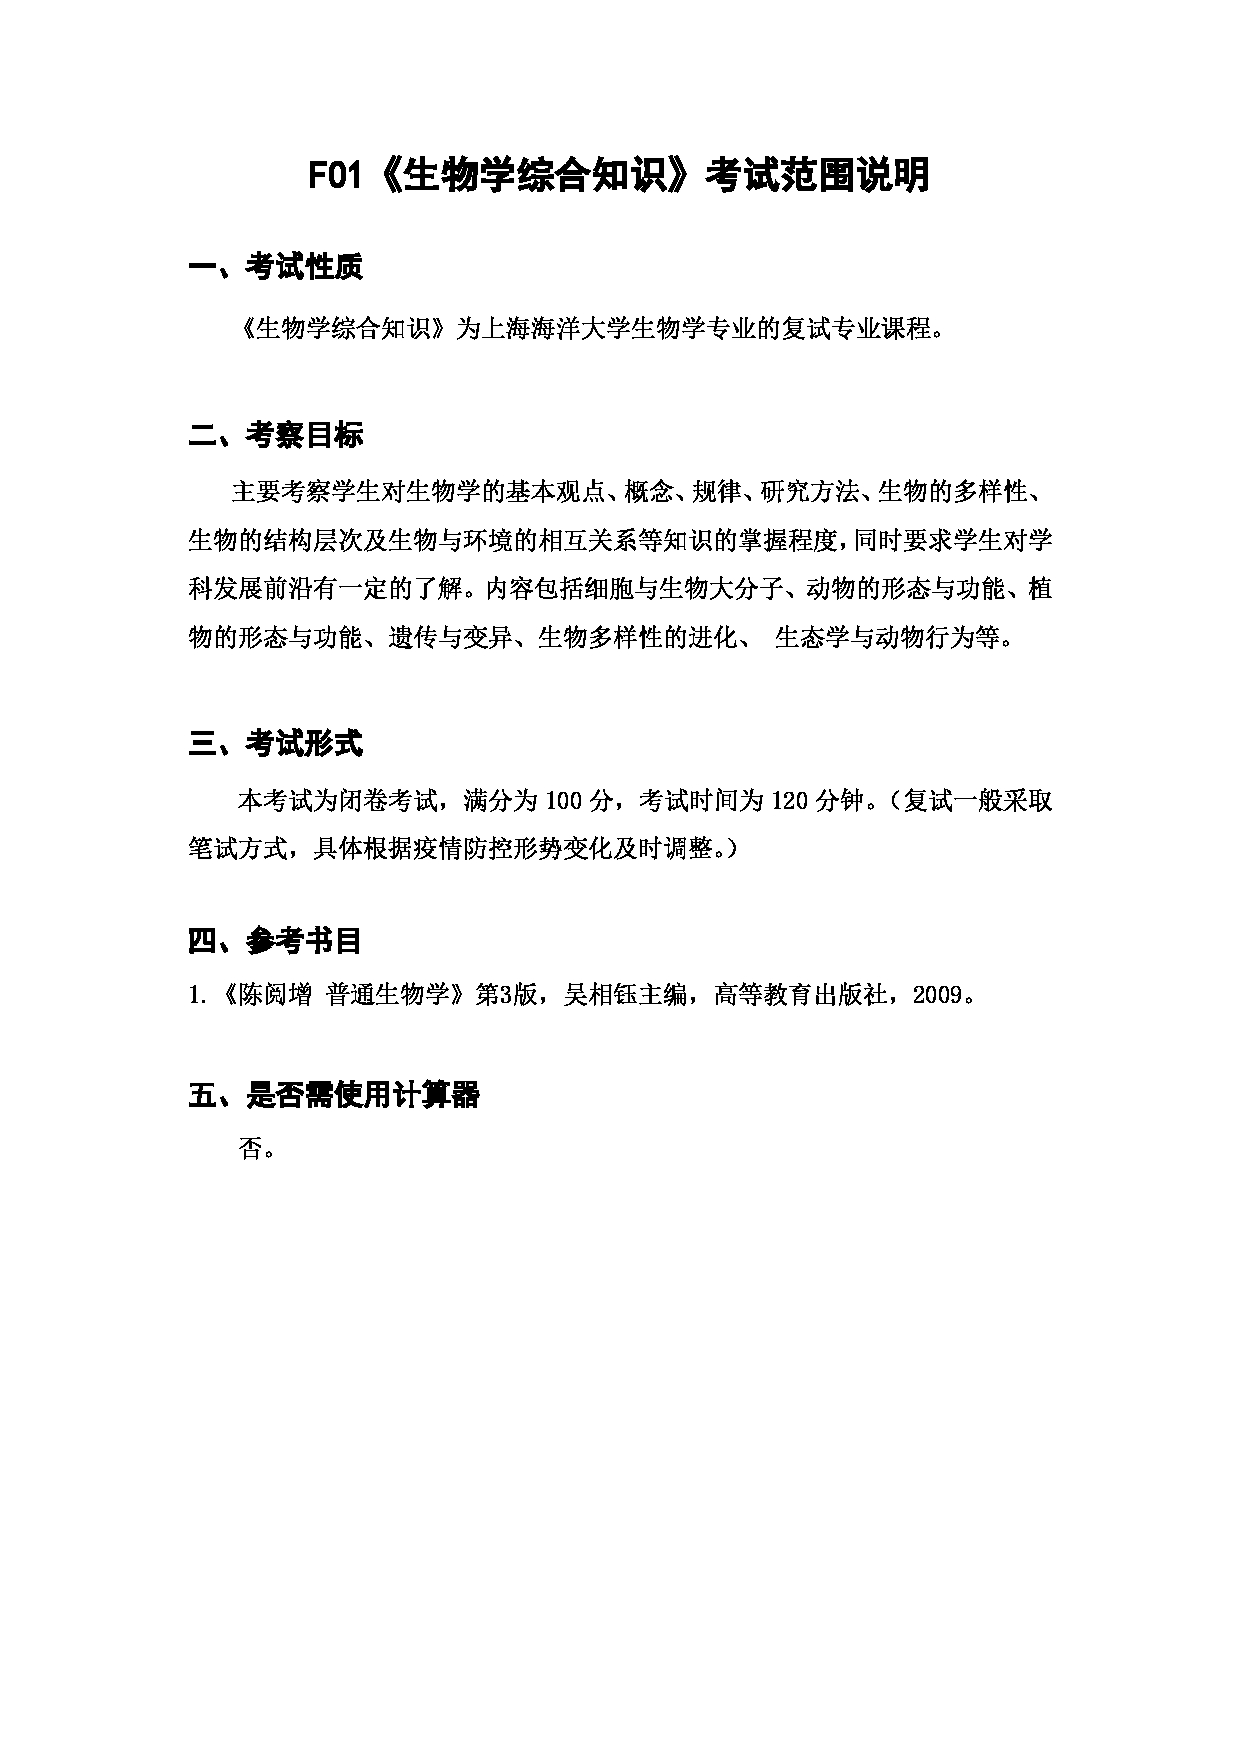 上海海洋大学2023年考研自命题科目 F01《生物学综合知识》 考试范围第1页